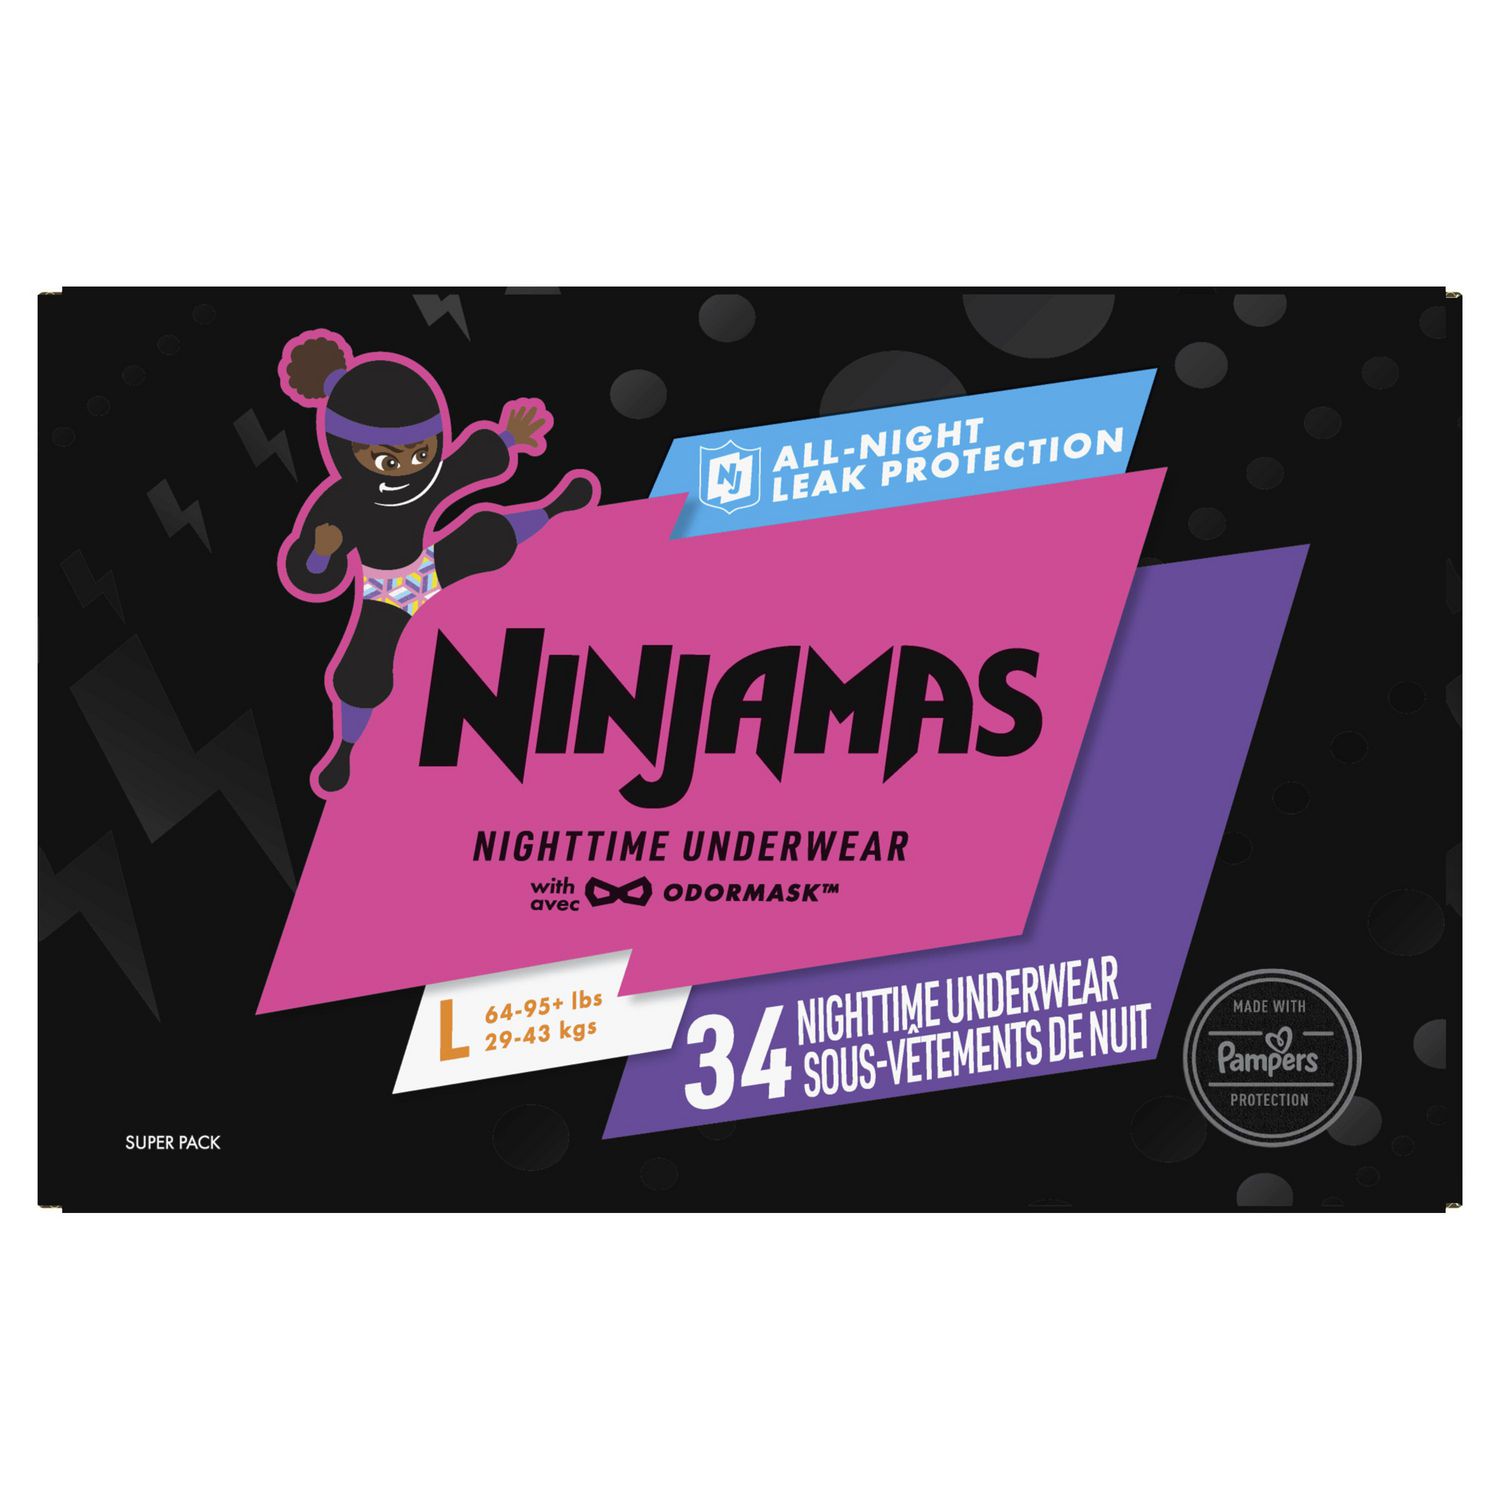 Pampers Ninjamas Pyjama Pants Unisex Spaceships, 4 - 7 Years, 60 Pyjama  Pants, 17kg - 30kg, All-Night Leak Protection, Packaging may vary :  : Baby Products